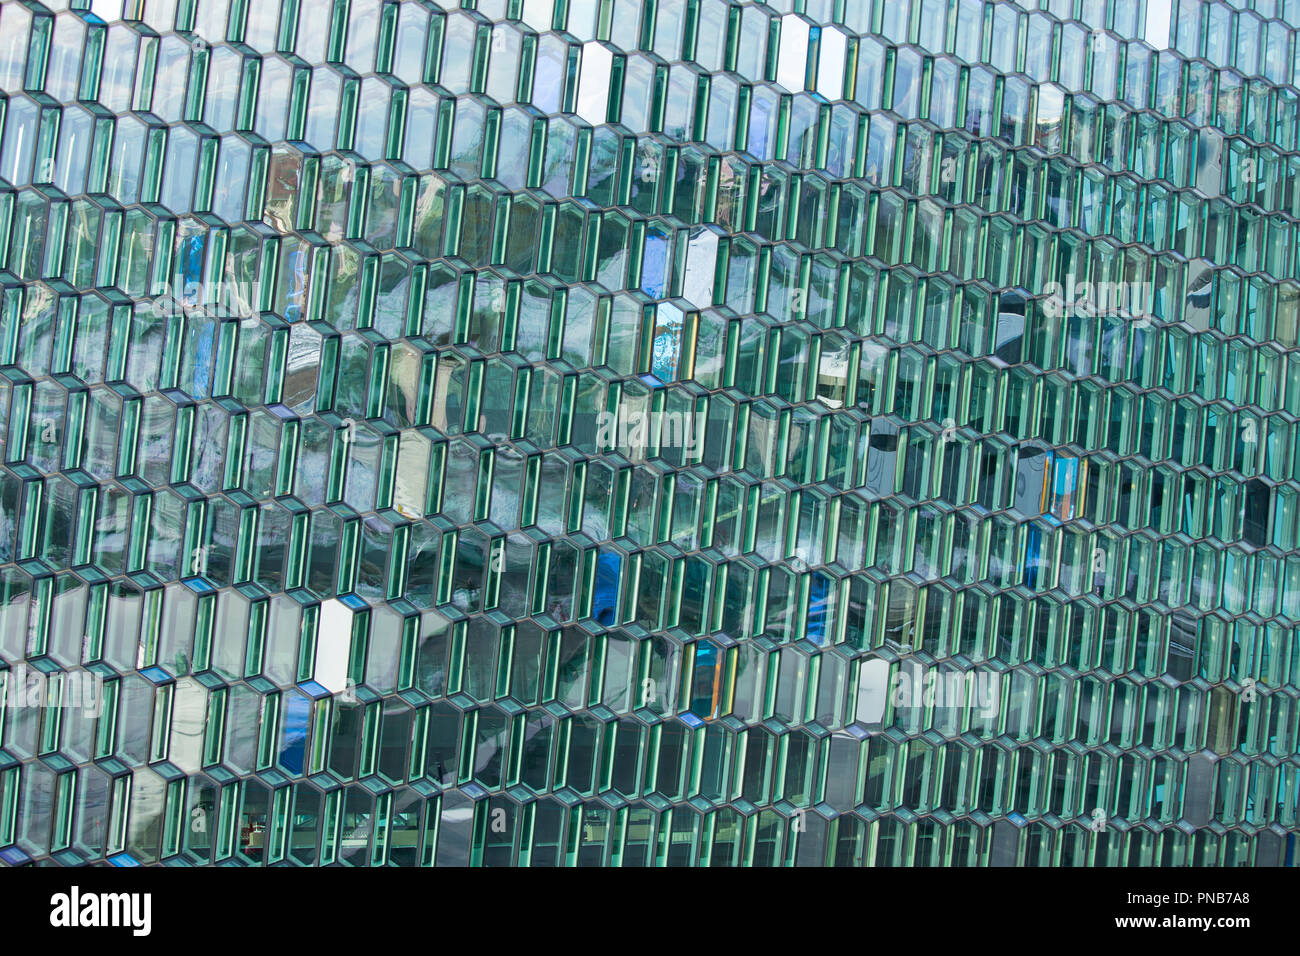 Architettura moderna vetri - esagonale in vetro colorato nella forma di blocchi di ghiaccio in corrispondenza di Harpa Concert Hall in città capitale di Reykjavik, Islanda Foto Stock